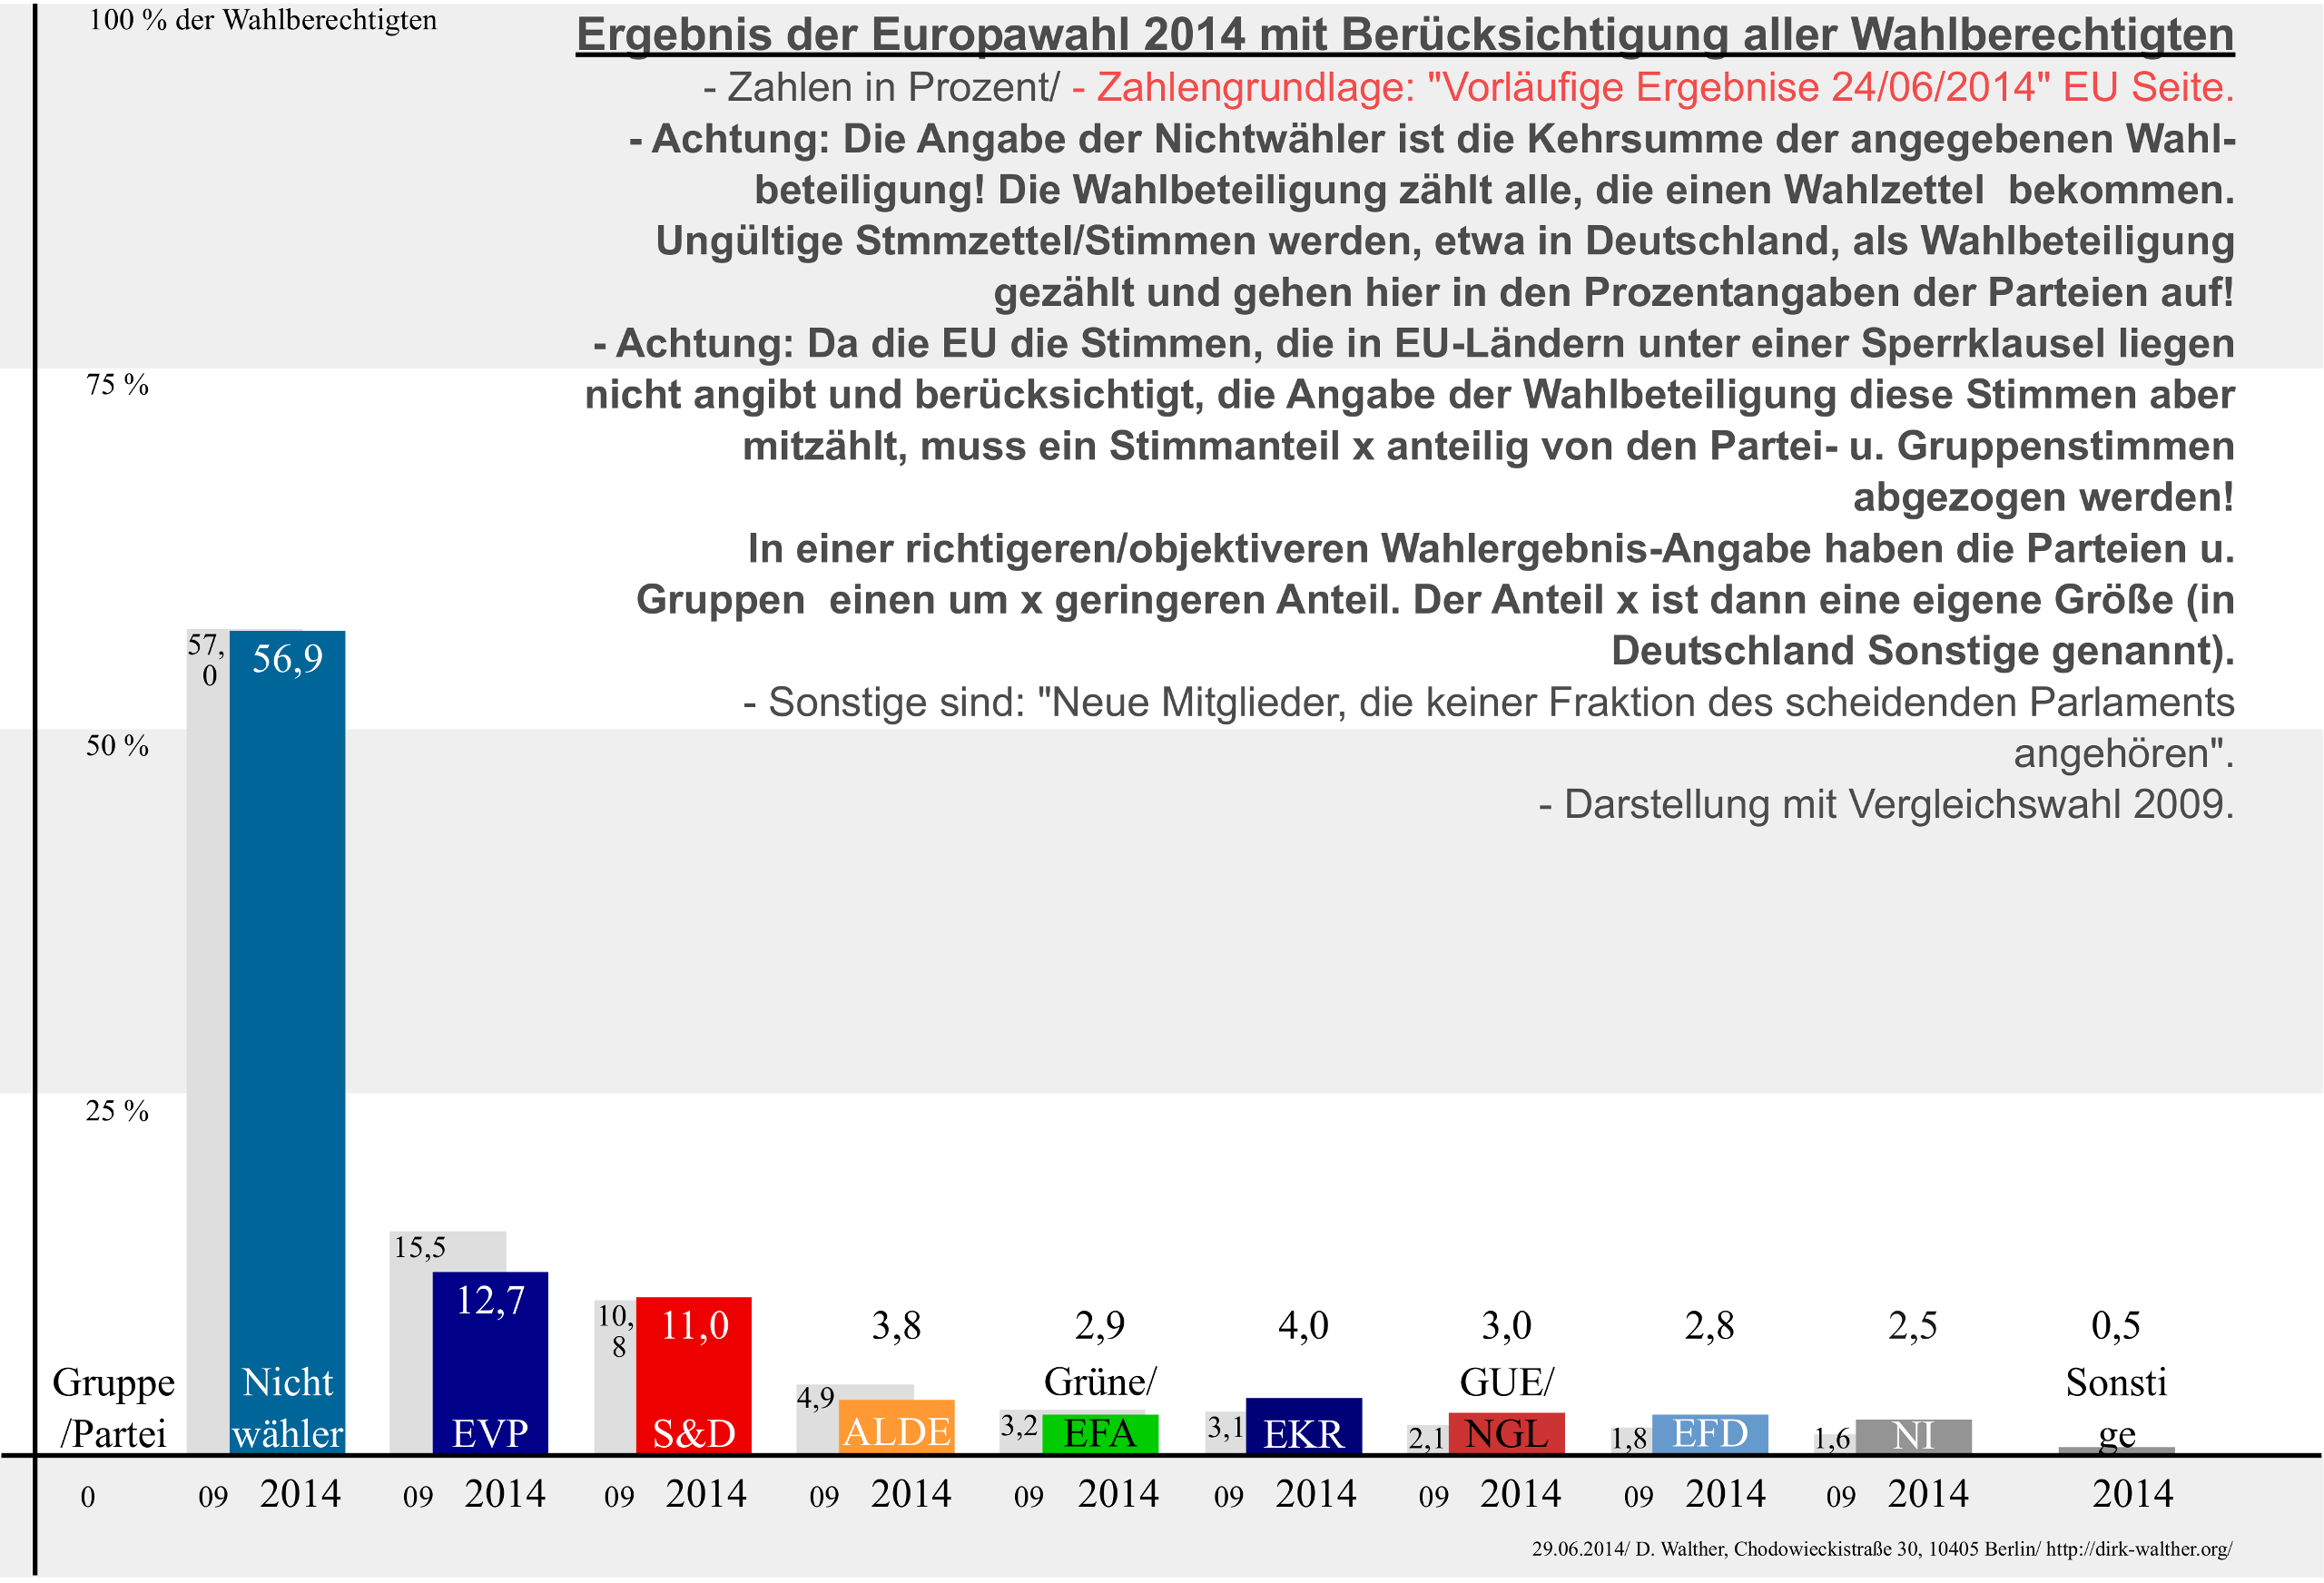 Europawahlergebnis 2014 mit Nichtwählern. - 2014-06.29._eig-xdiagra 2560